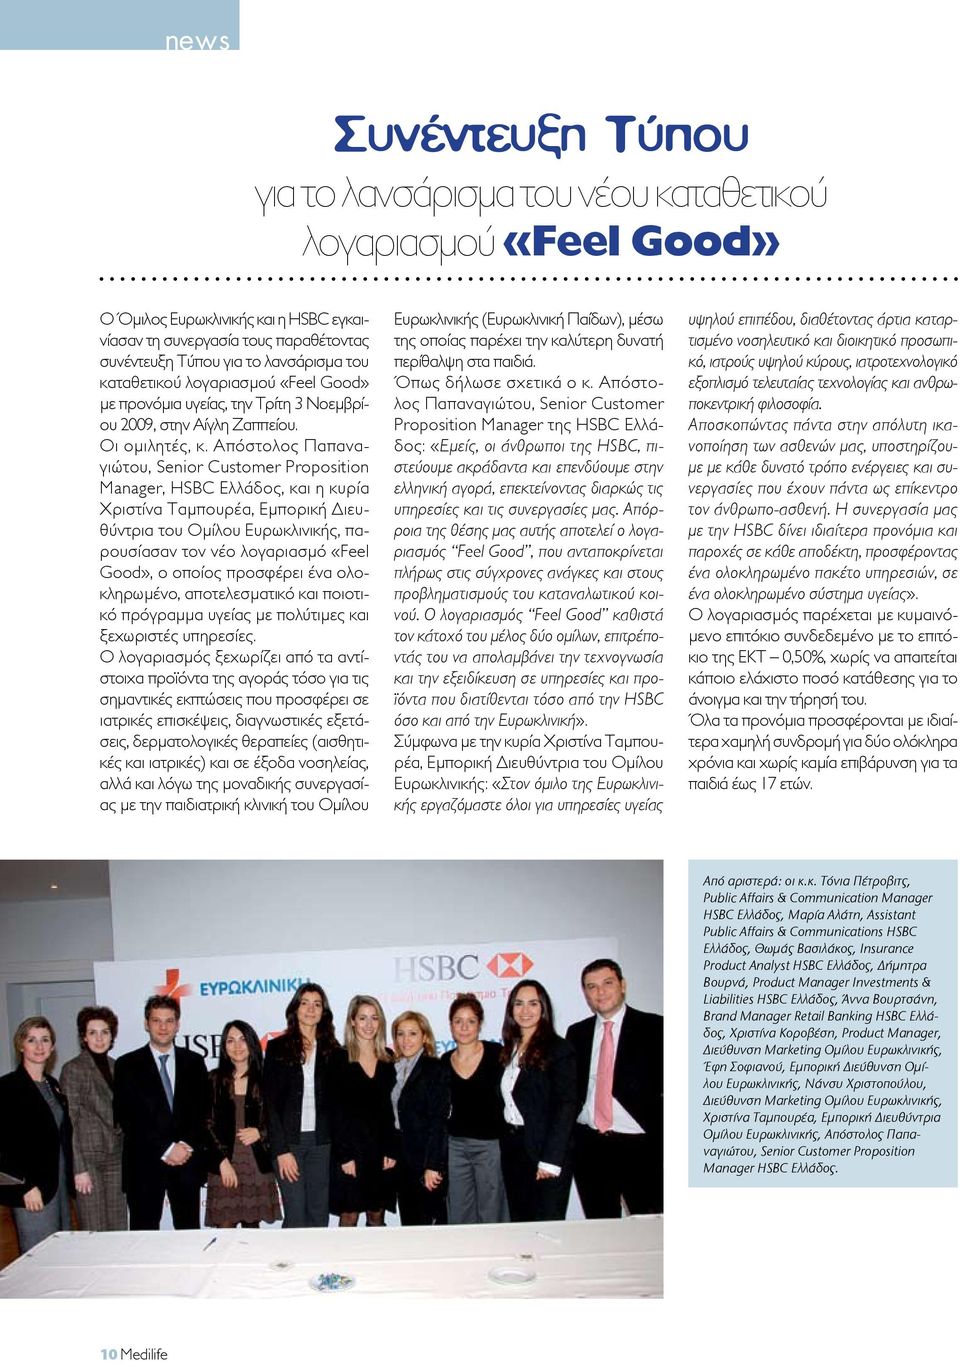 Απόστολος Παπαναγιώτου, Senior Customer Proposition Manager, HSBC Ελλάδος, και η κυρία Χριστίνα Ταμπουρέα, Εμπορική Διευθύντρια του Ομίλου Ευρωκλινικής, παρουσίασαν τον νέο λογαριασμό «Feel Good», ο